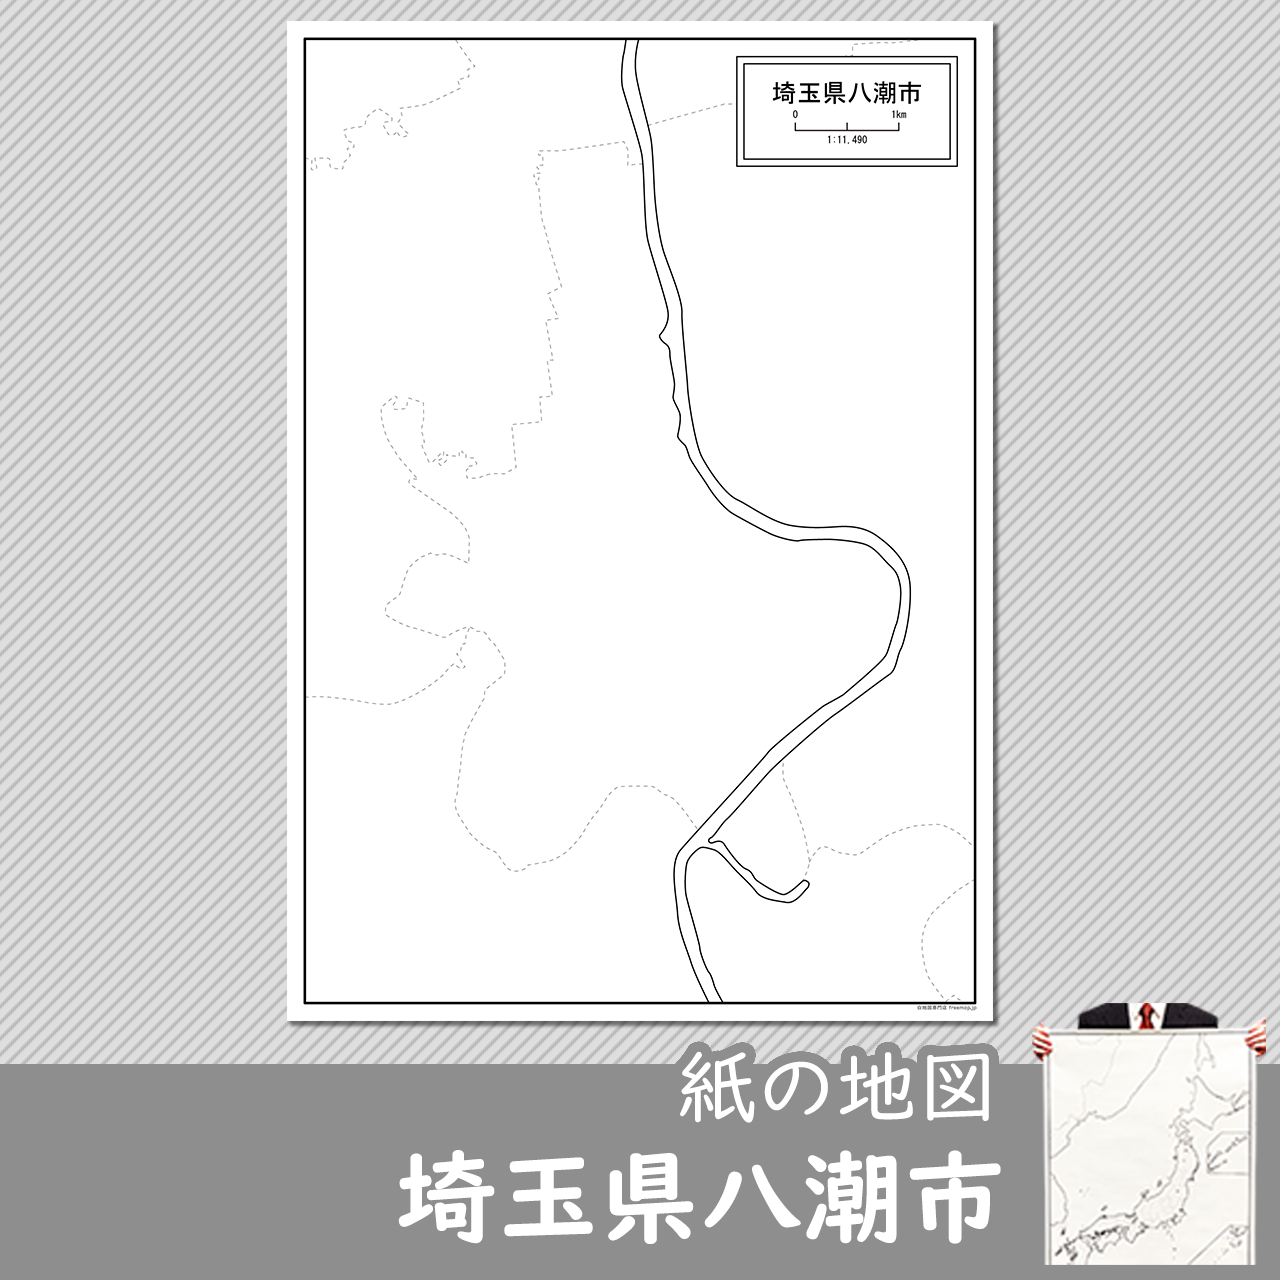 八潮市の紙の白地図のサムネイル